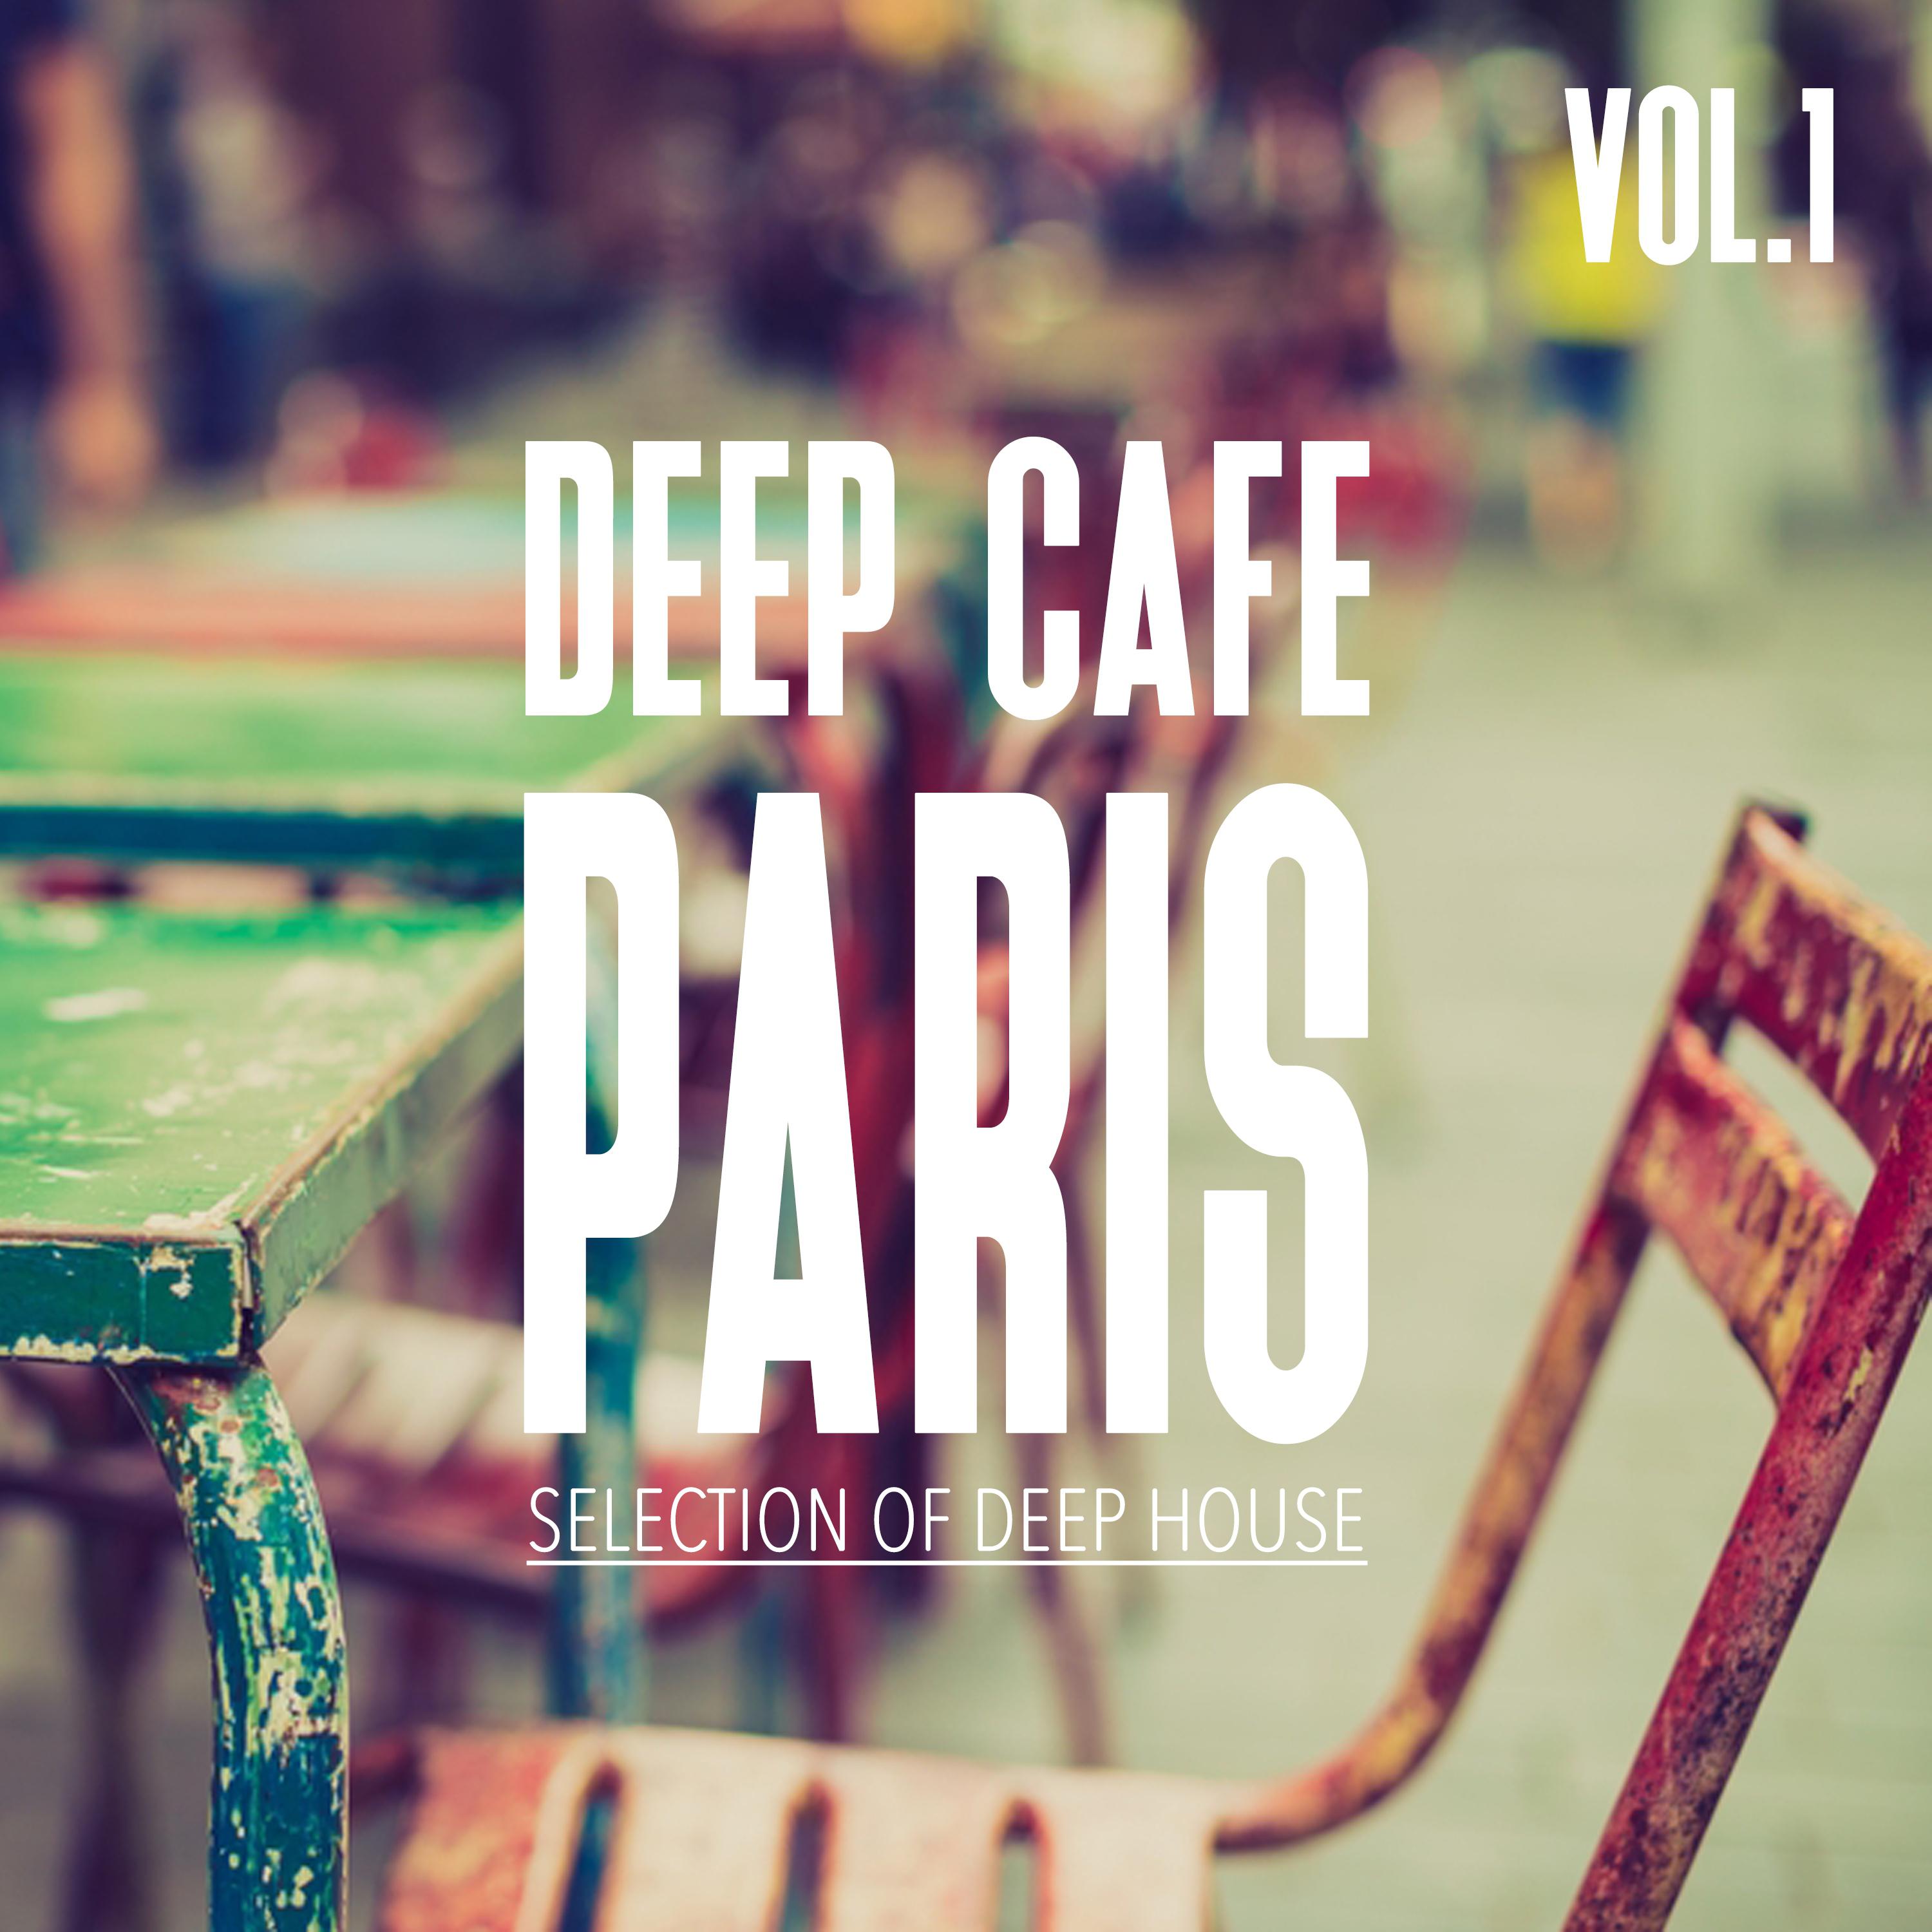 Deep Cafe Paris, Vol. 1 - Selection of Deep House